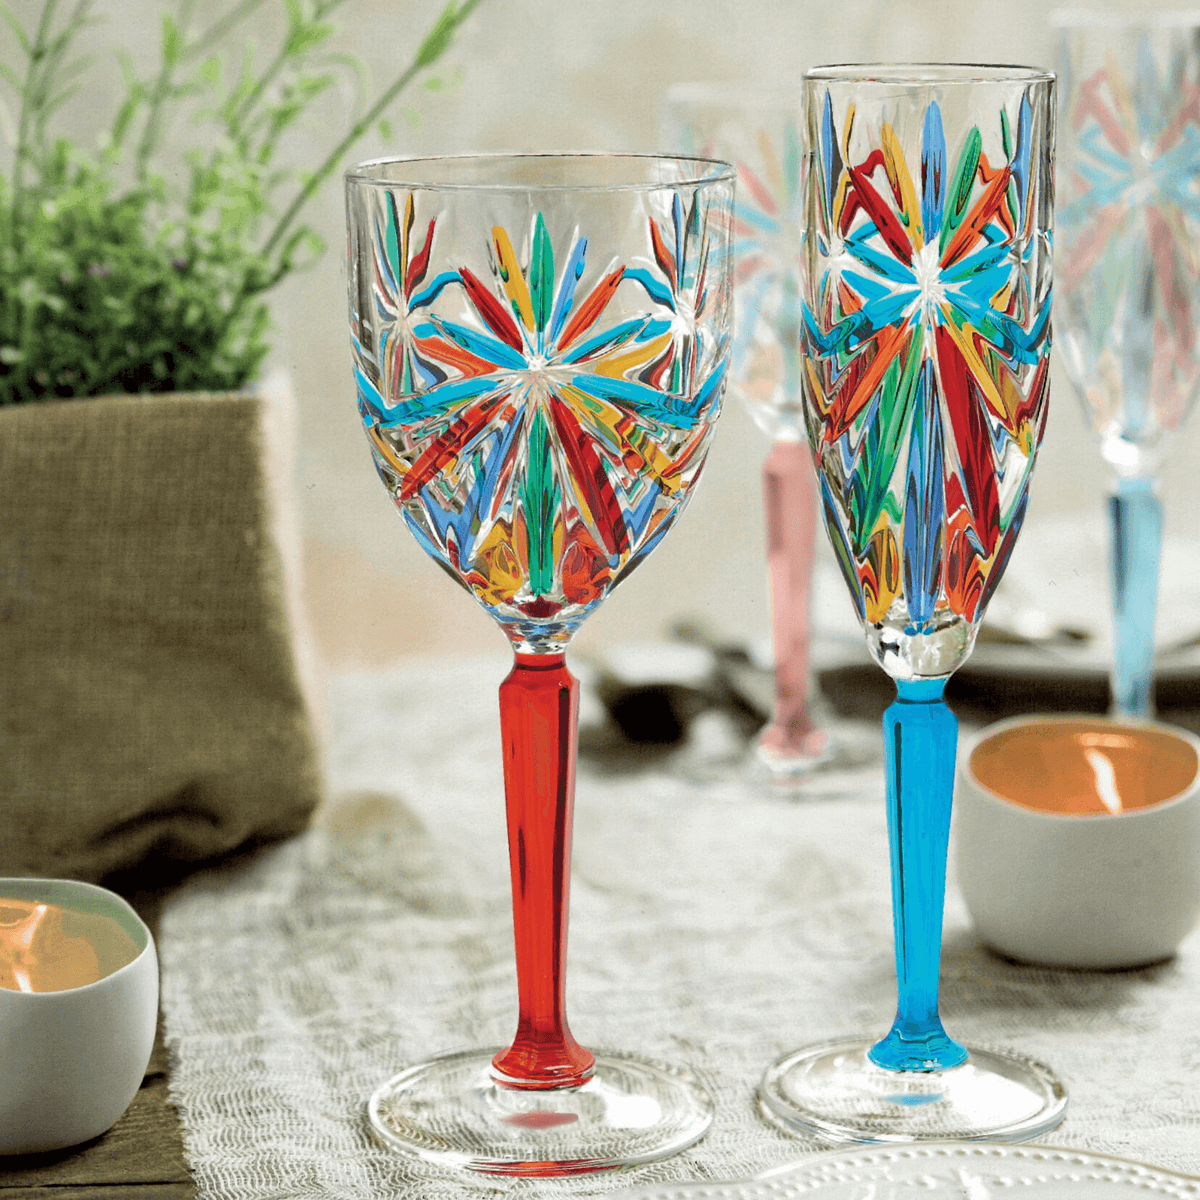 Starburst Wine Glasses, Hand-Painted Italian Crystal at MyItalianDecor